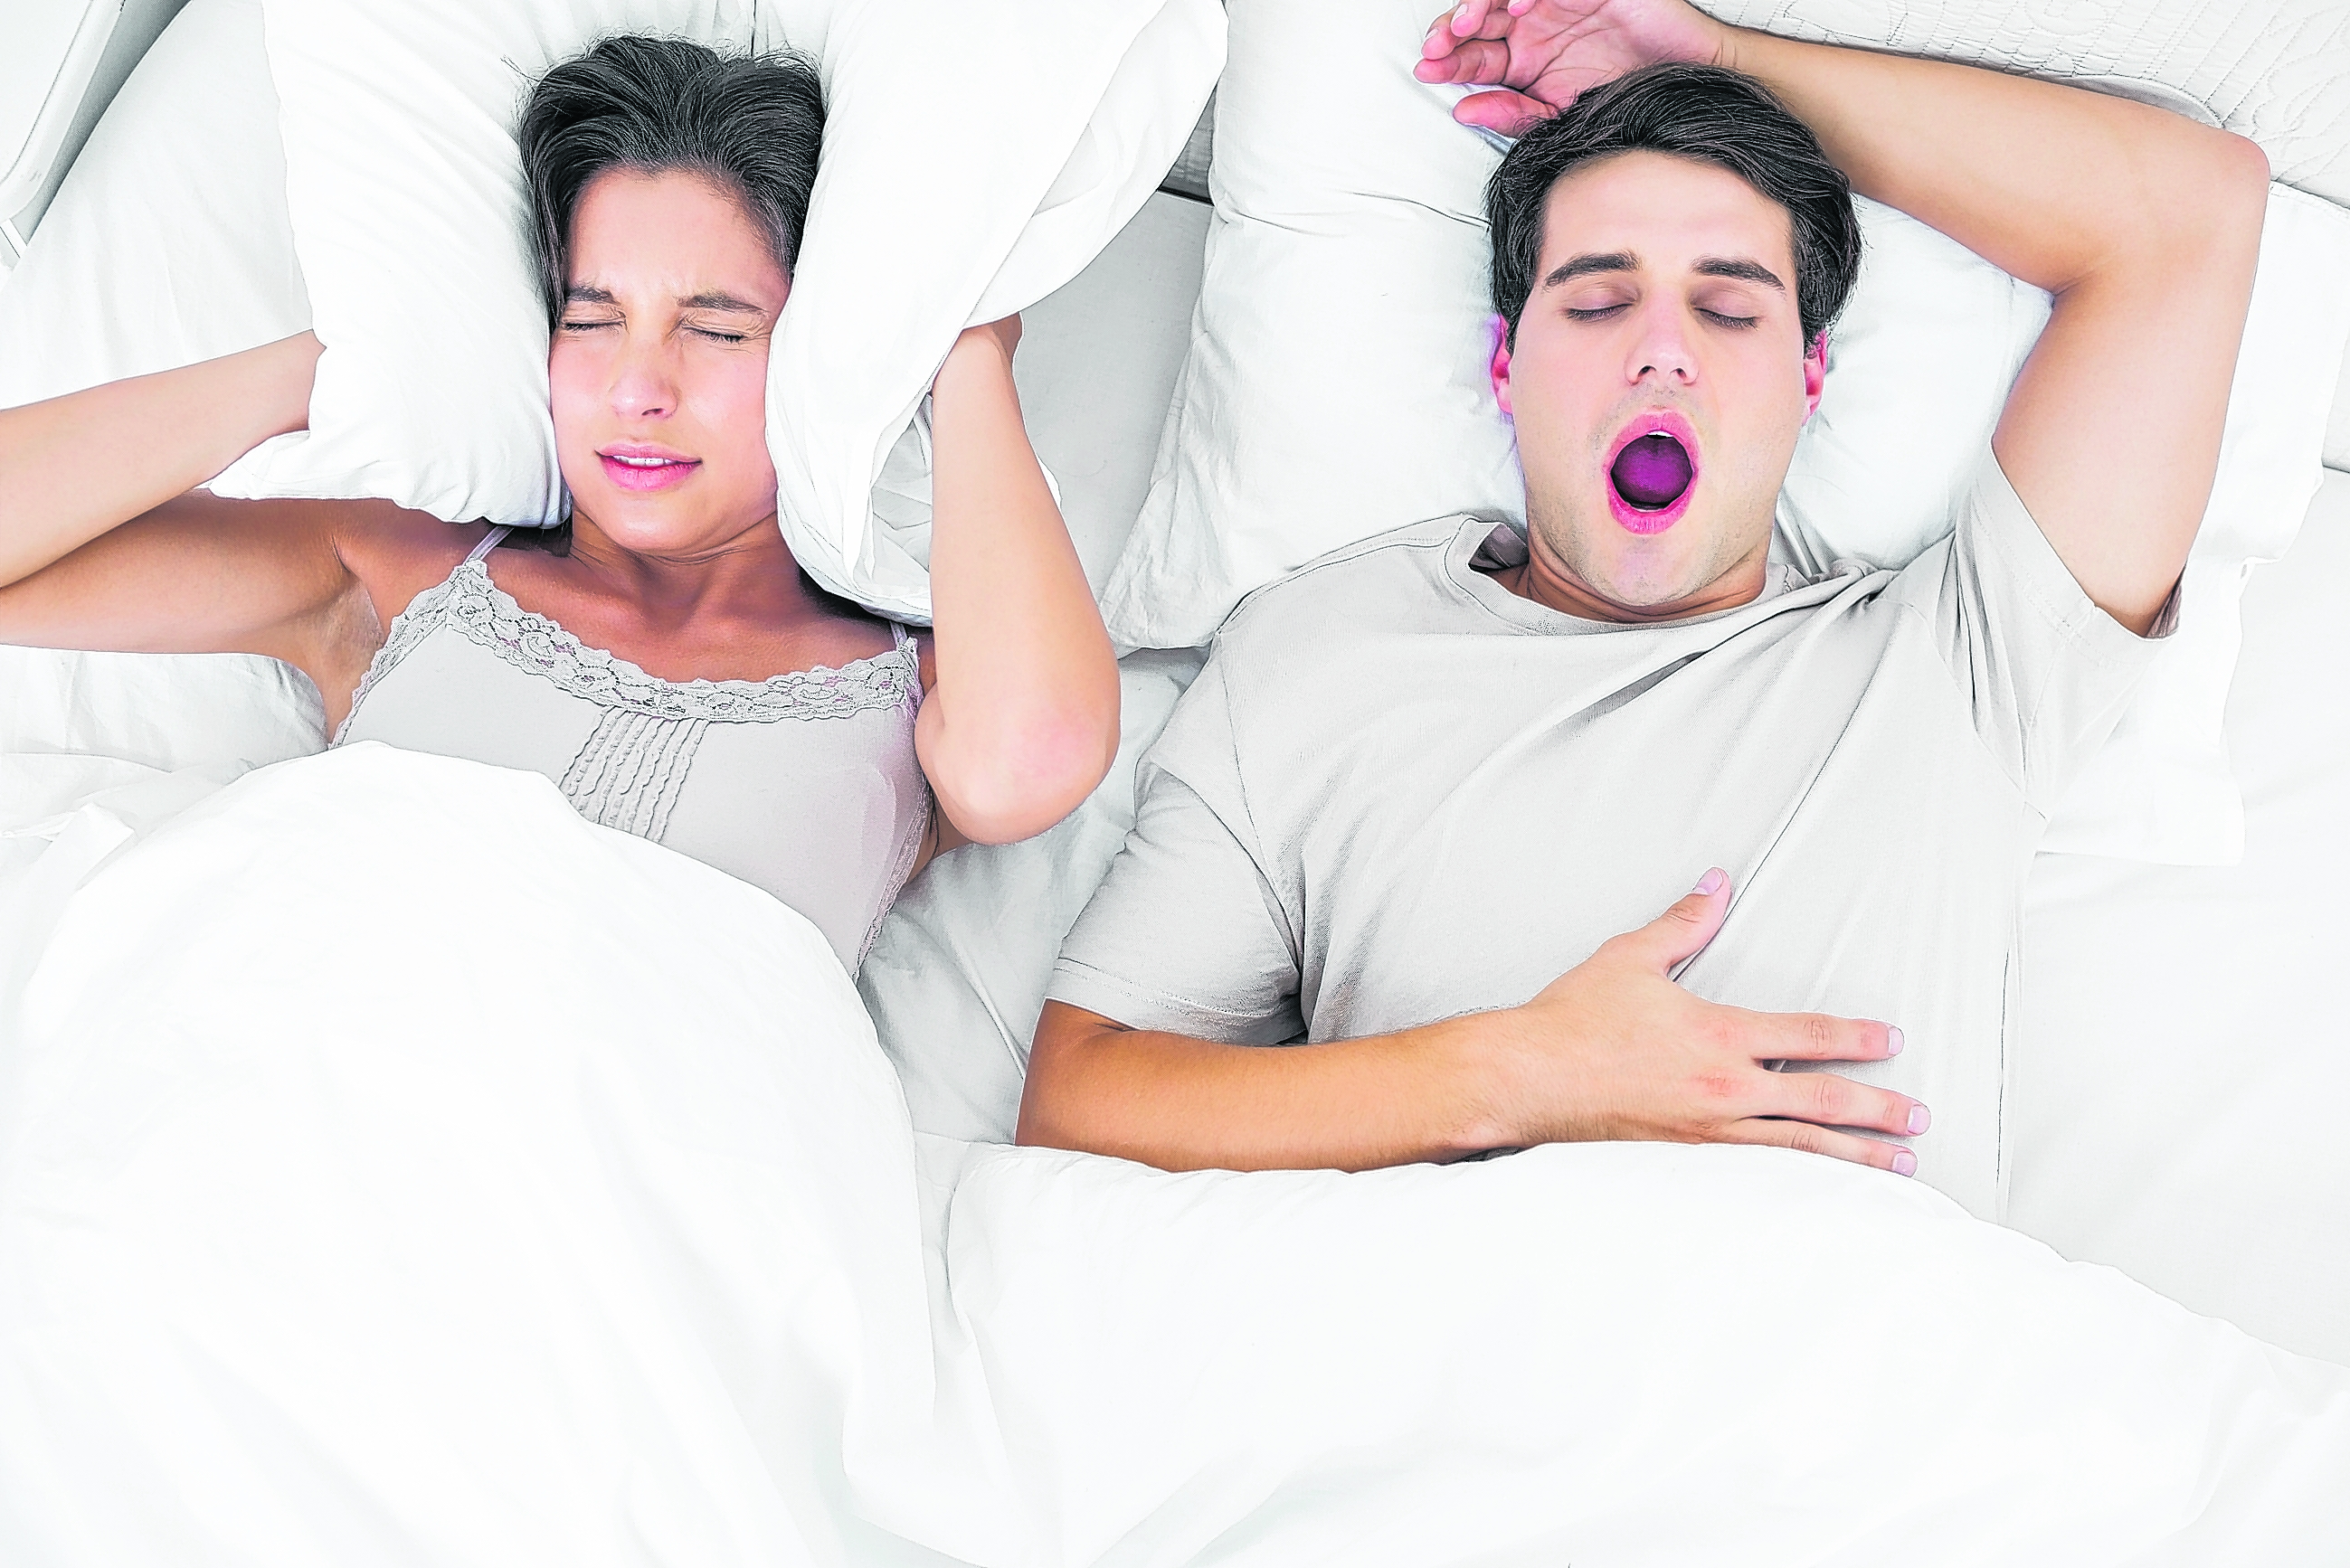 La apnea del sueño, un problema con consecuencias graves